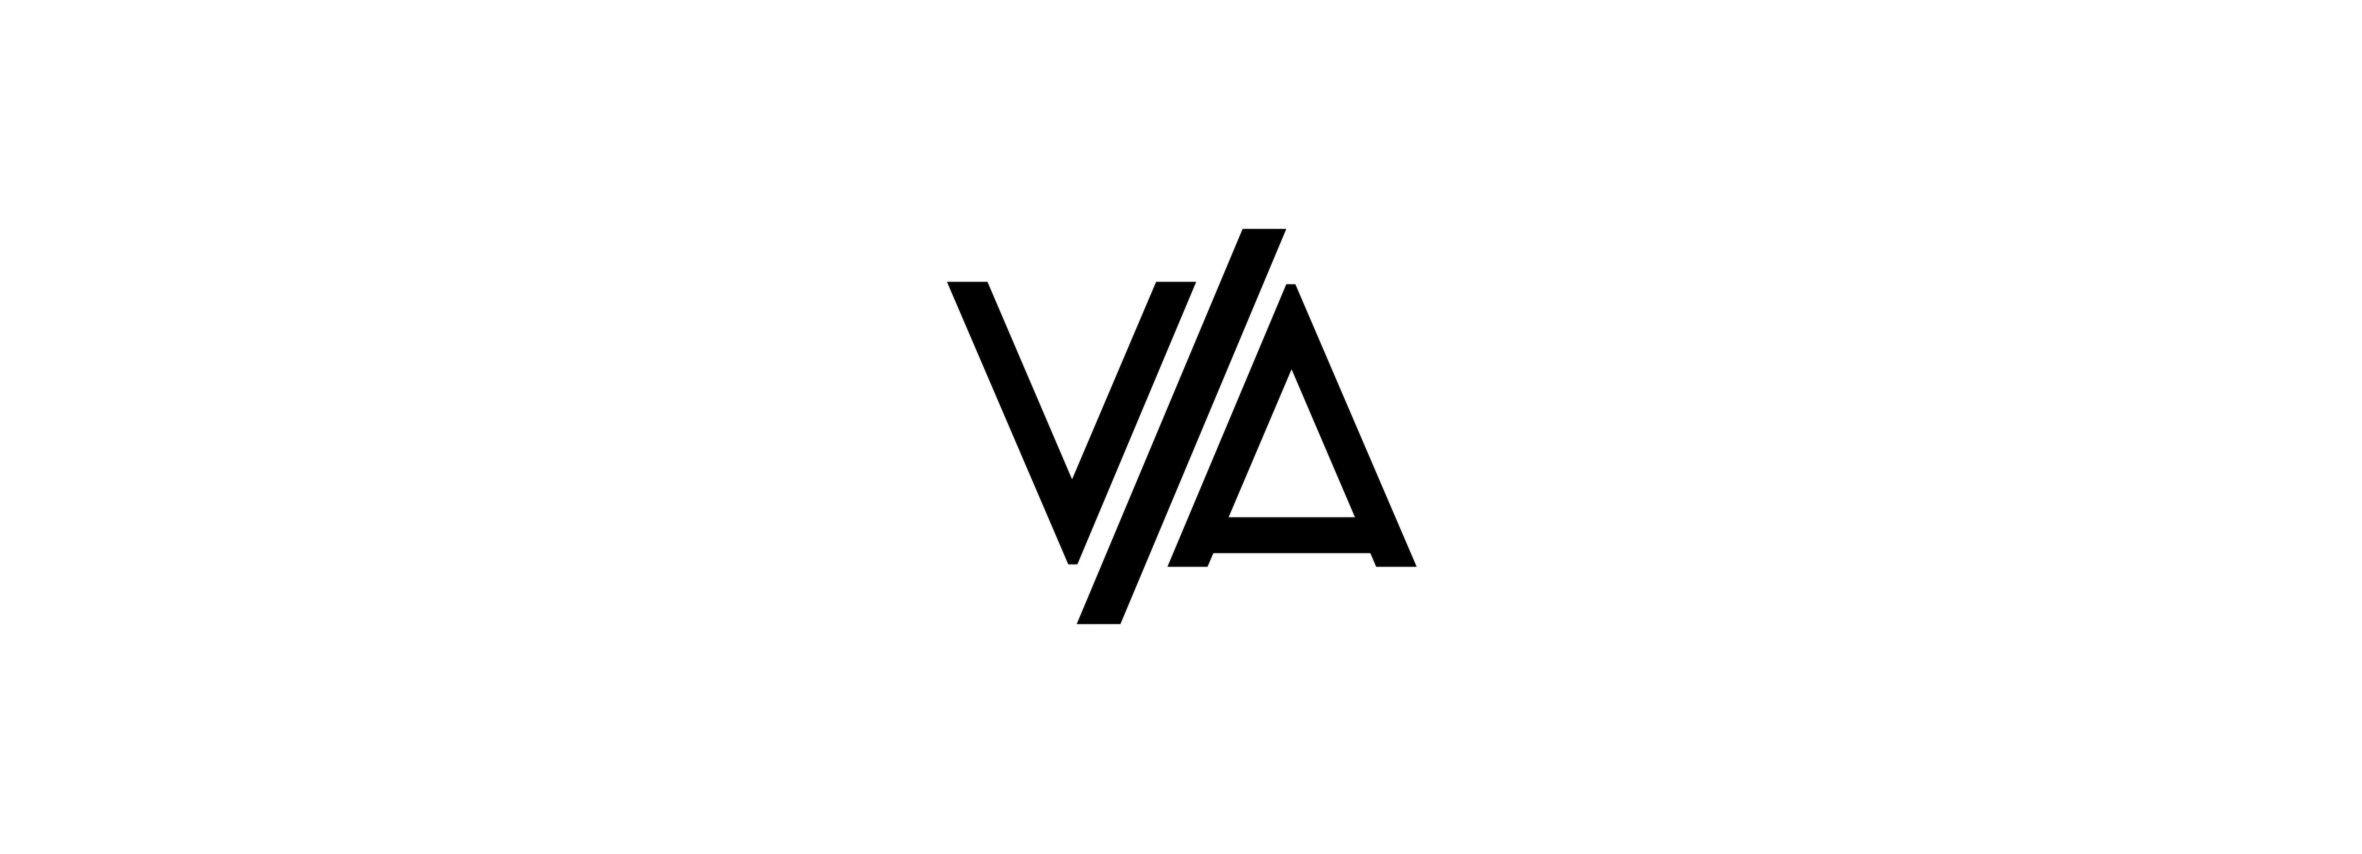 VA Logo - VA logo. | sakarovalexander